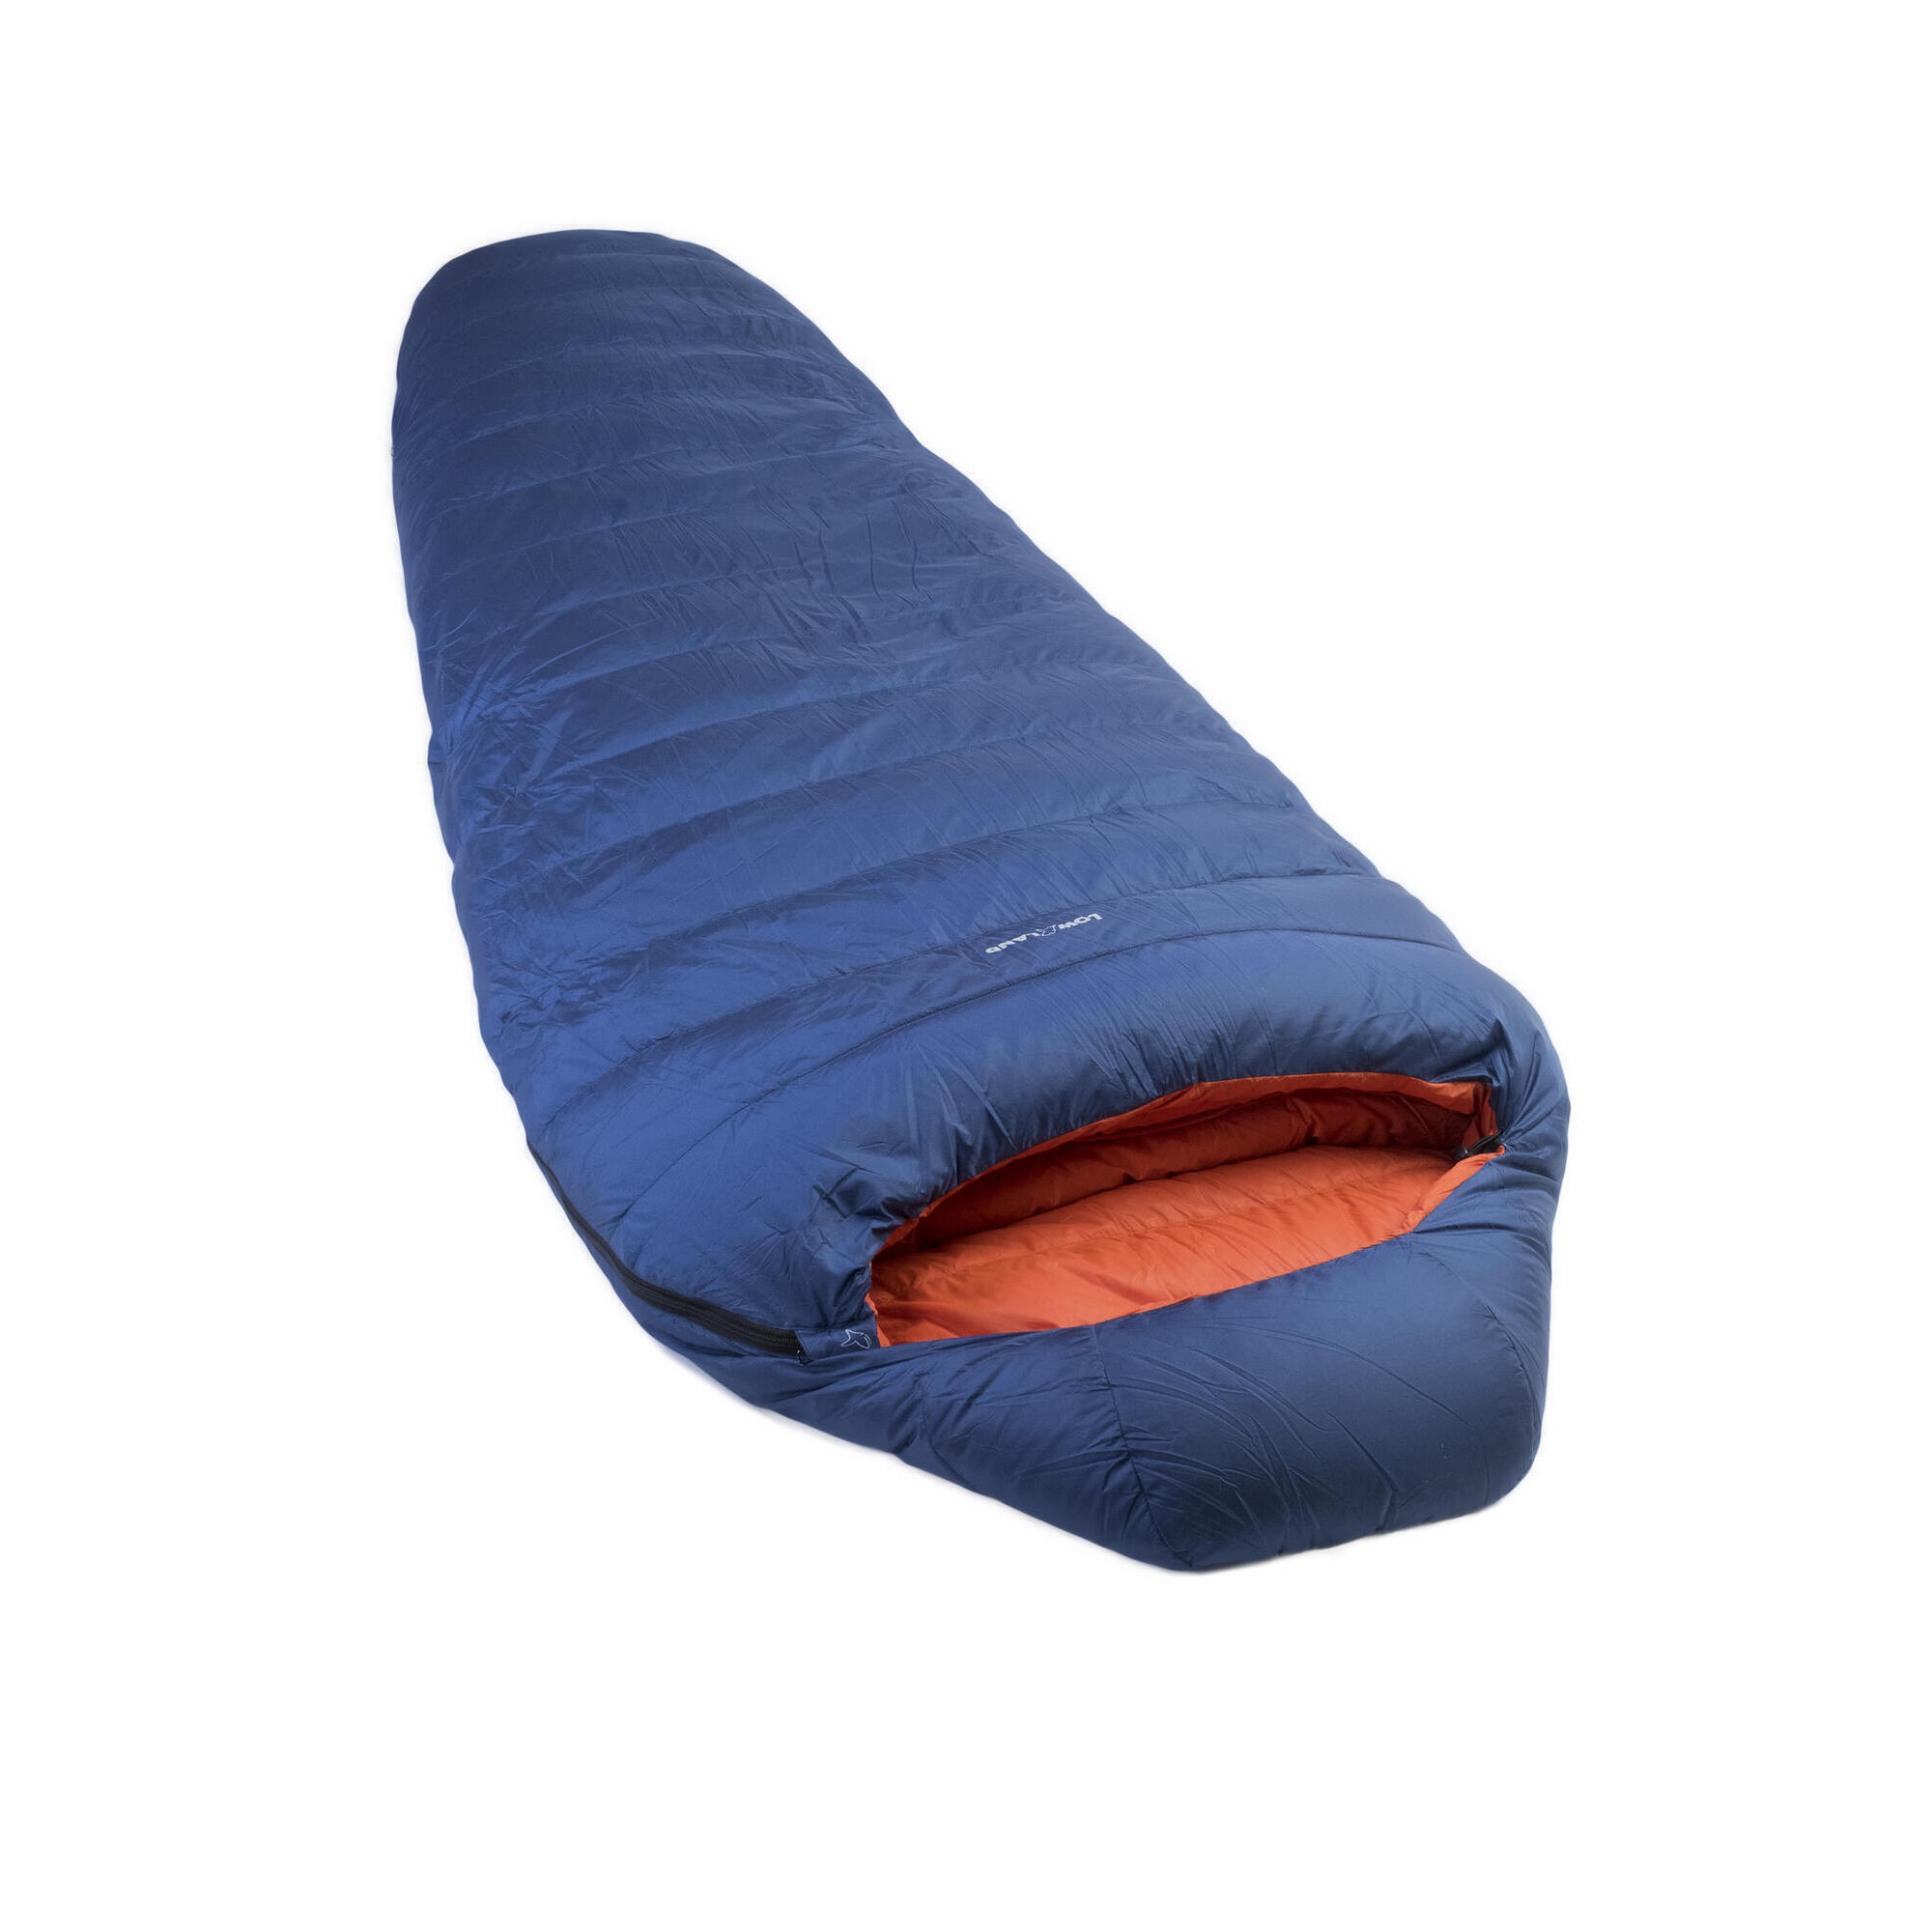 многофункциональная детская коляска теплый спальный мешок утолщенный ветрозащитный универсальный спальный мешок для ребенка зимний сп Мешок Kibo - 5 пуховый спальный нейлоновый 225x80 см, сине - оранжевый